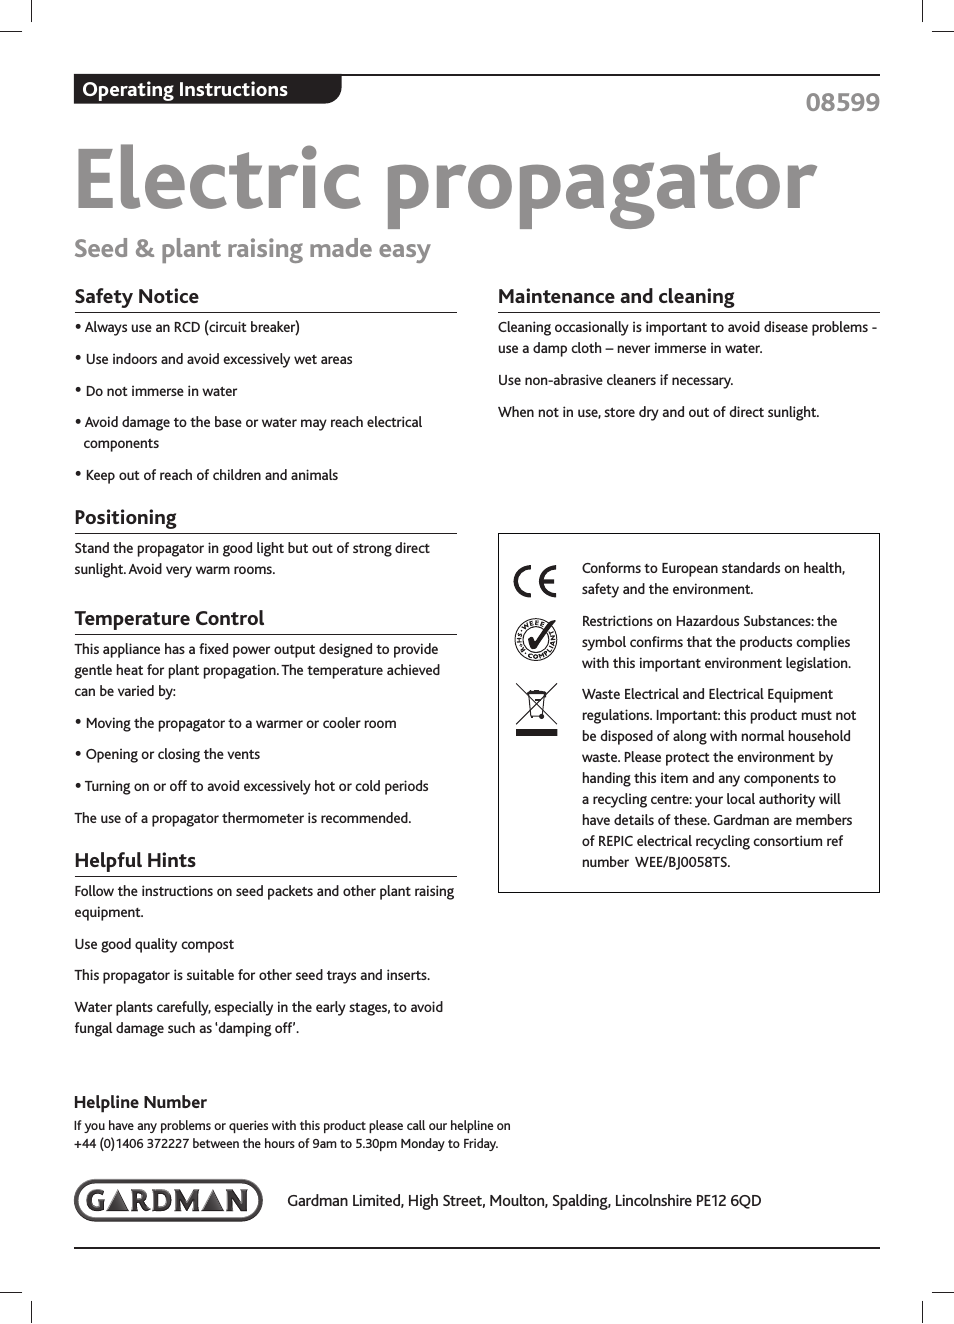 Electric propagator